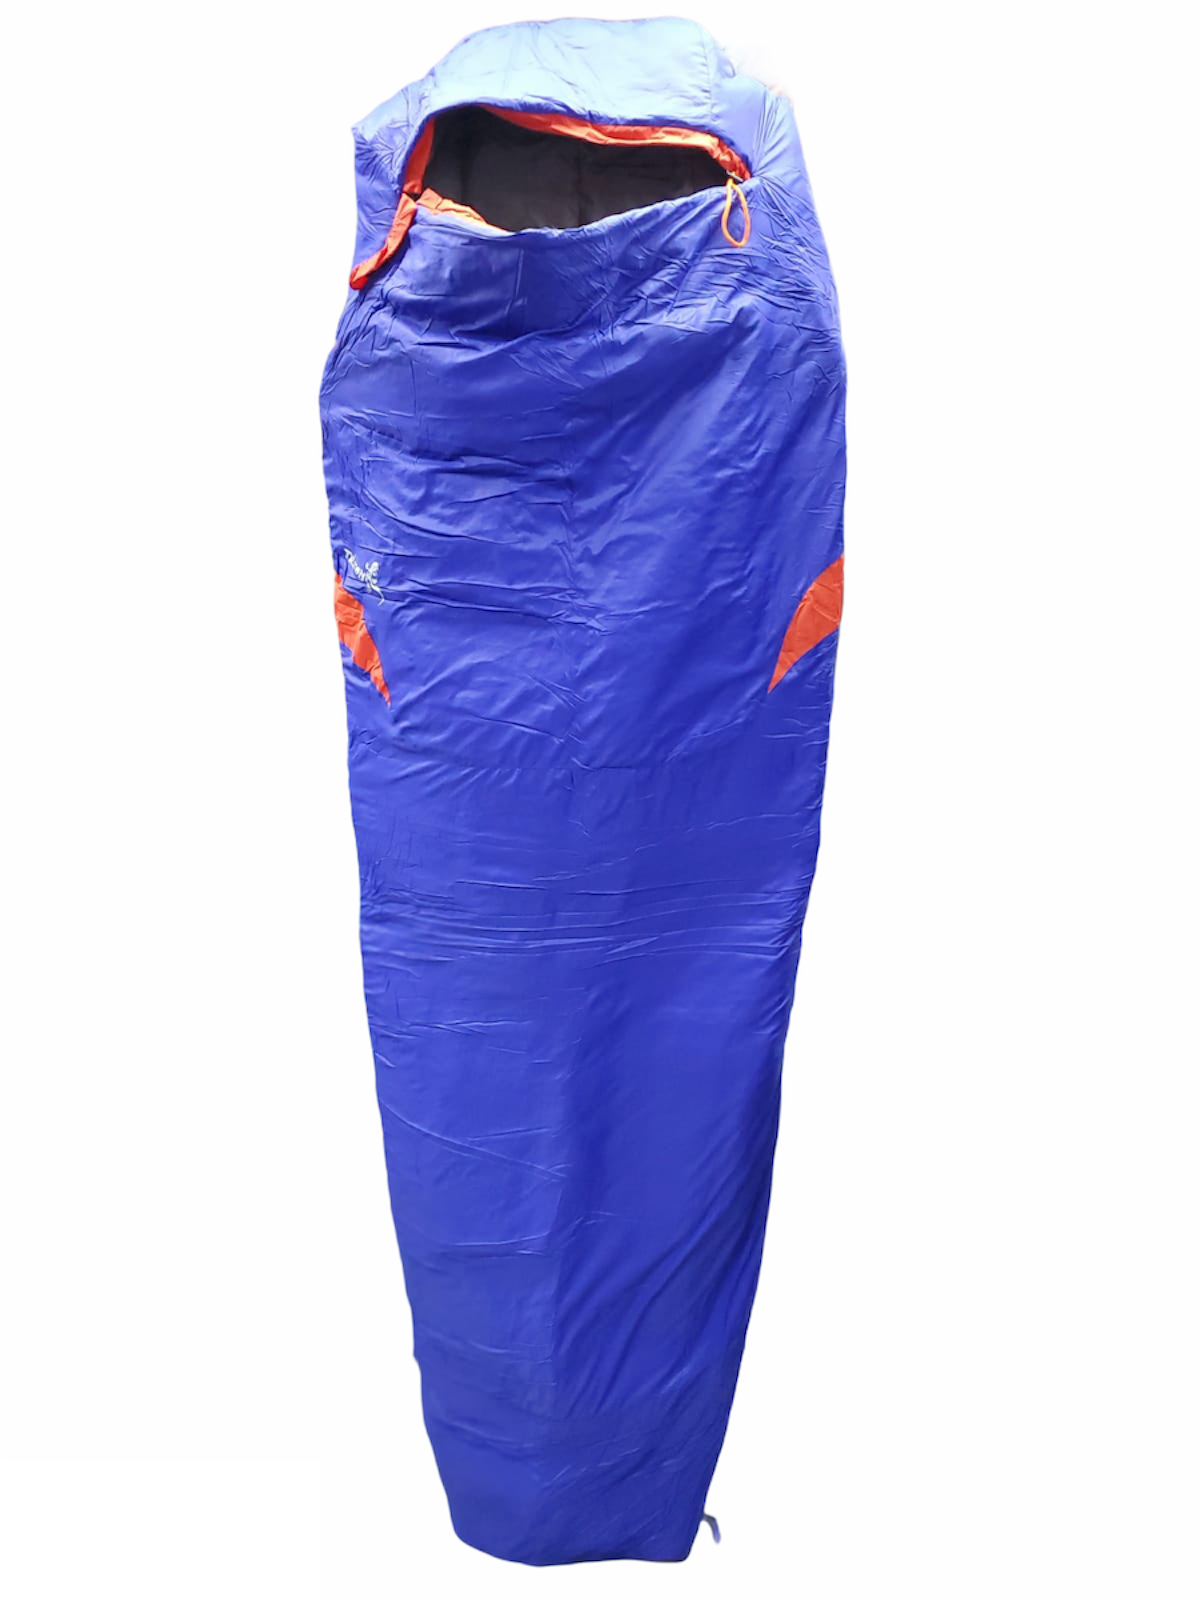 人造纖維睡袋 Ascent 990 M Blue/Oange